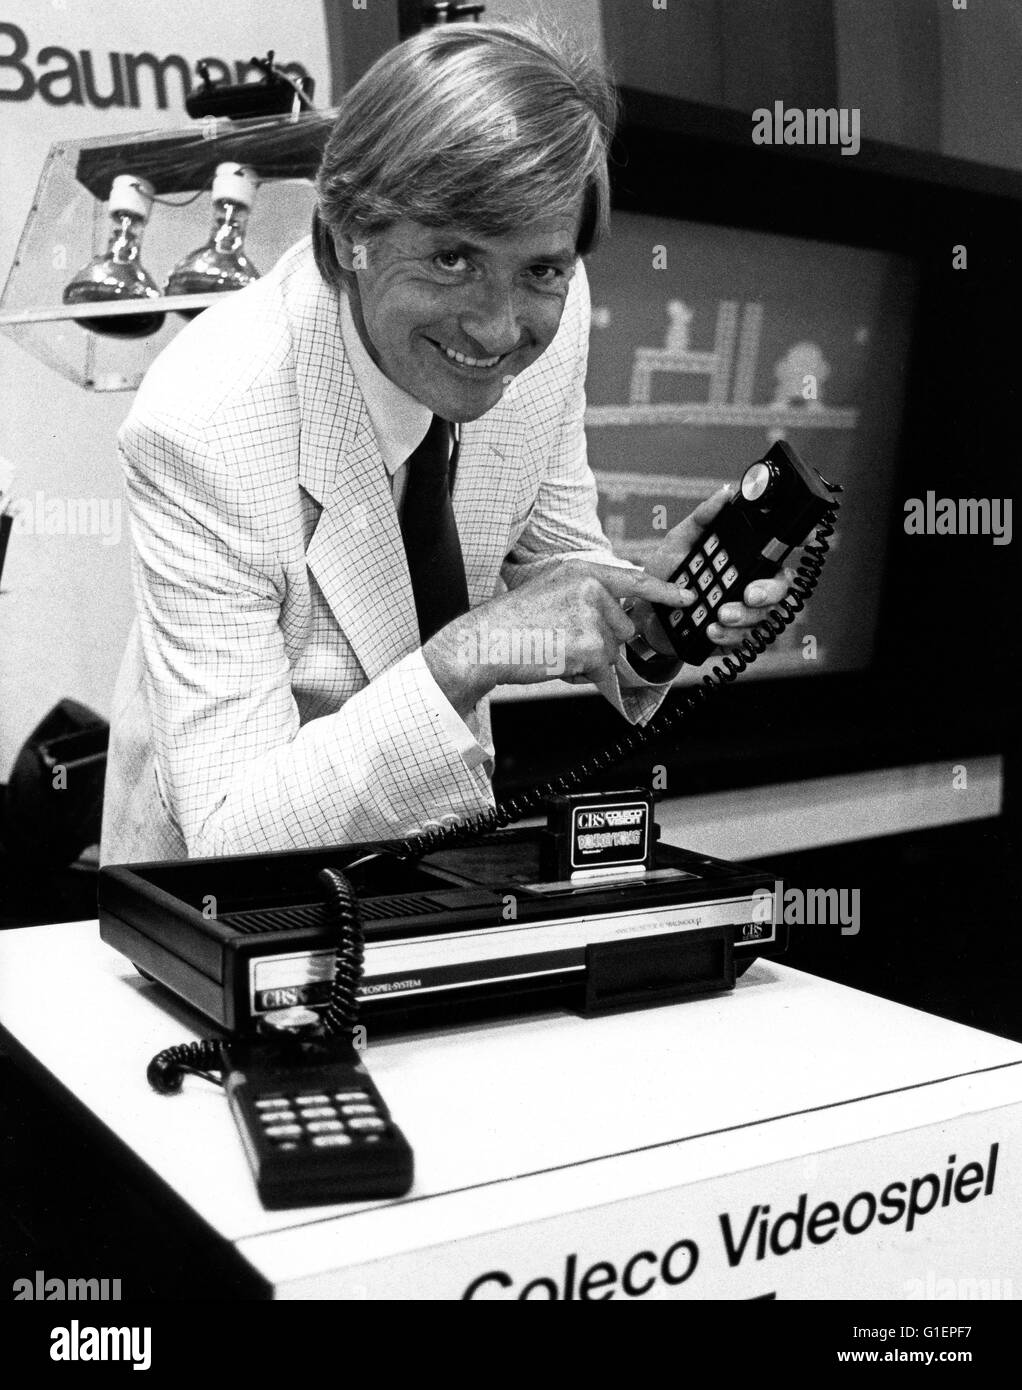 Der Schweizer Journalist Guido Baumann auf einer Videospielmesse, Deutschland 1980er Jahre. Swiss journalist Guido Baumann, Germany 1980s. Stock Photo